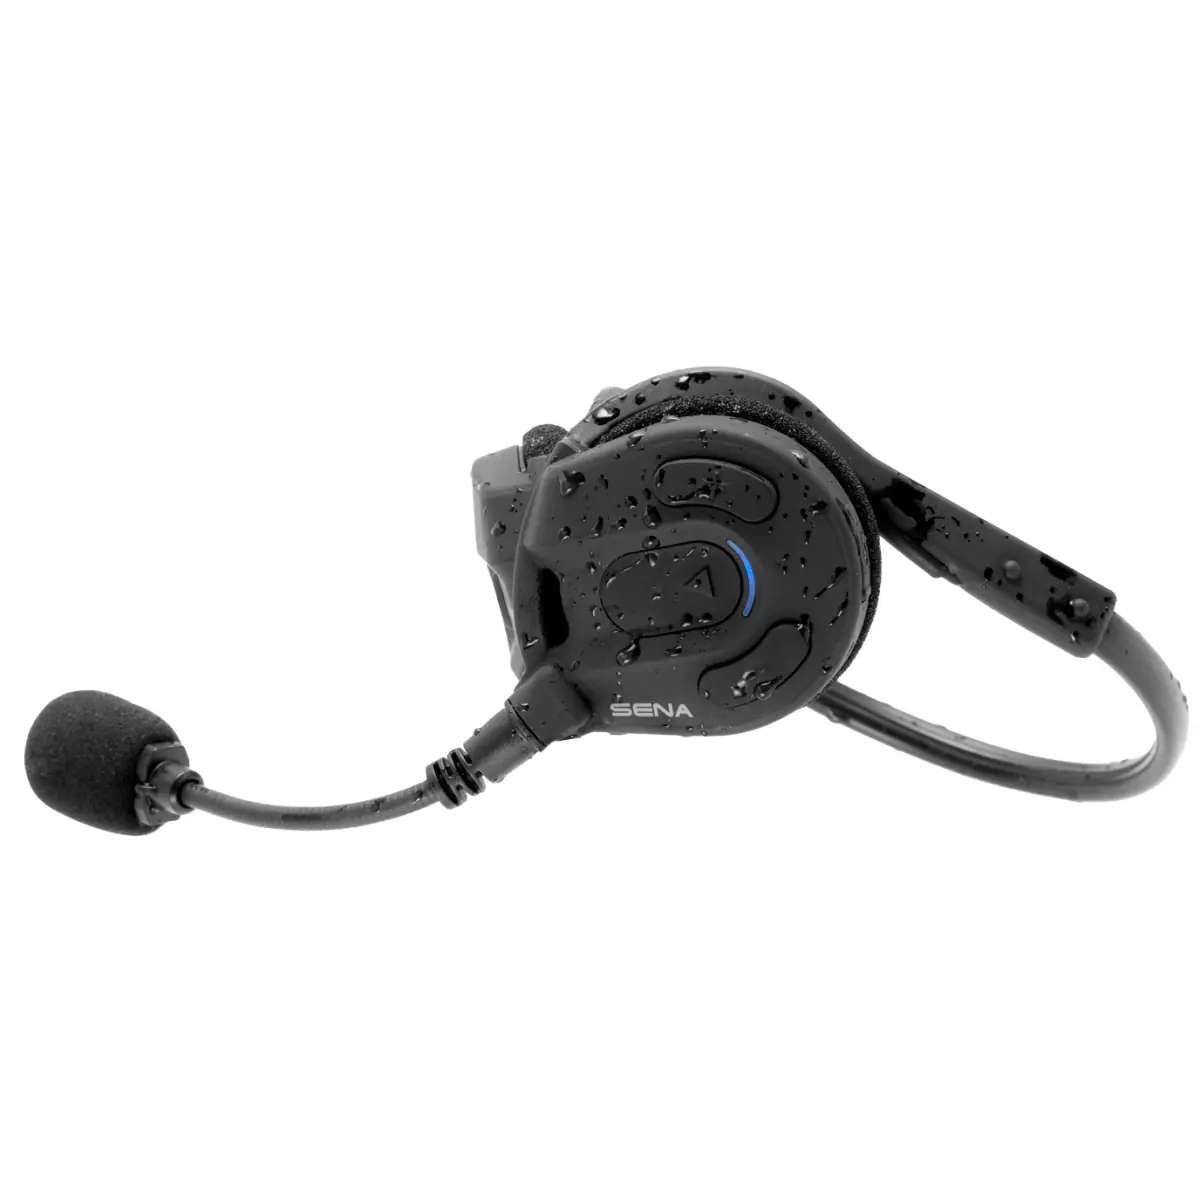 Sena  Boom uitvouwen - headset  communiceren draadloos  via intercom - waterbestendig